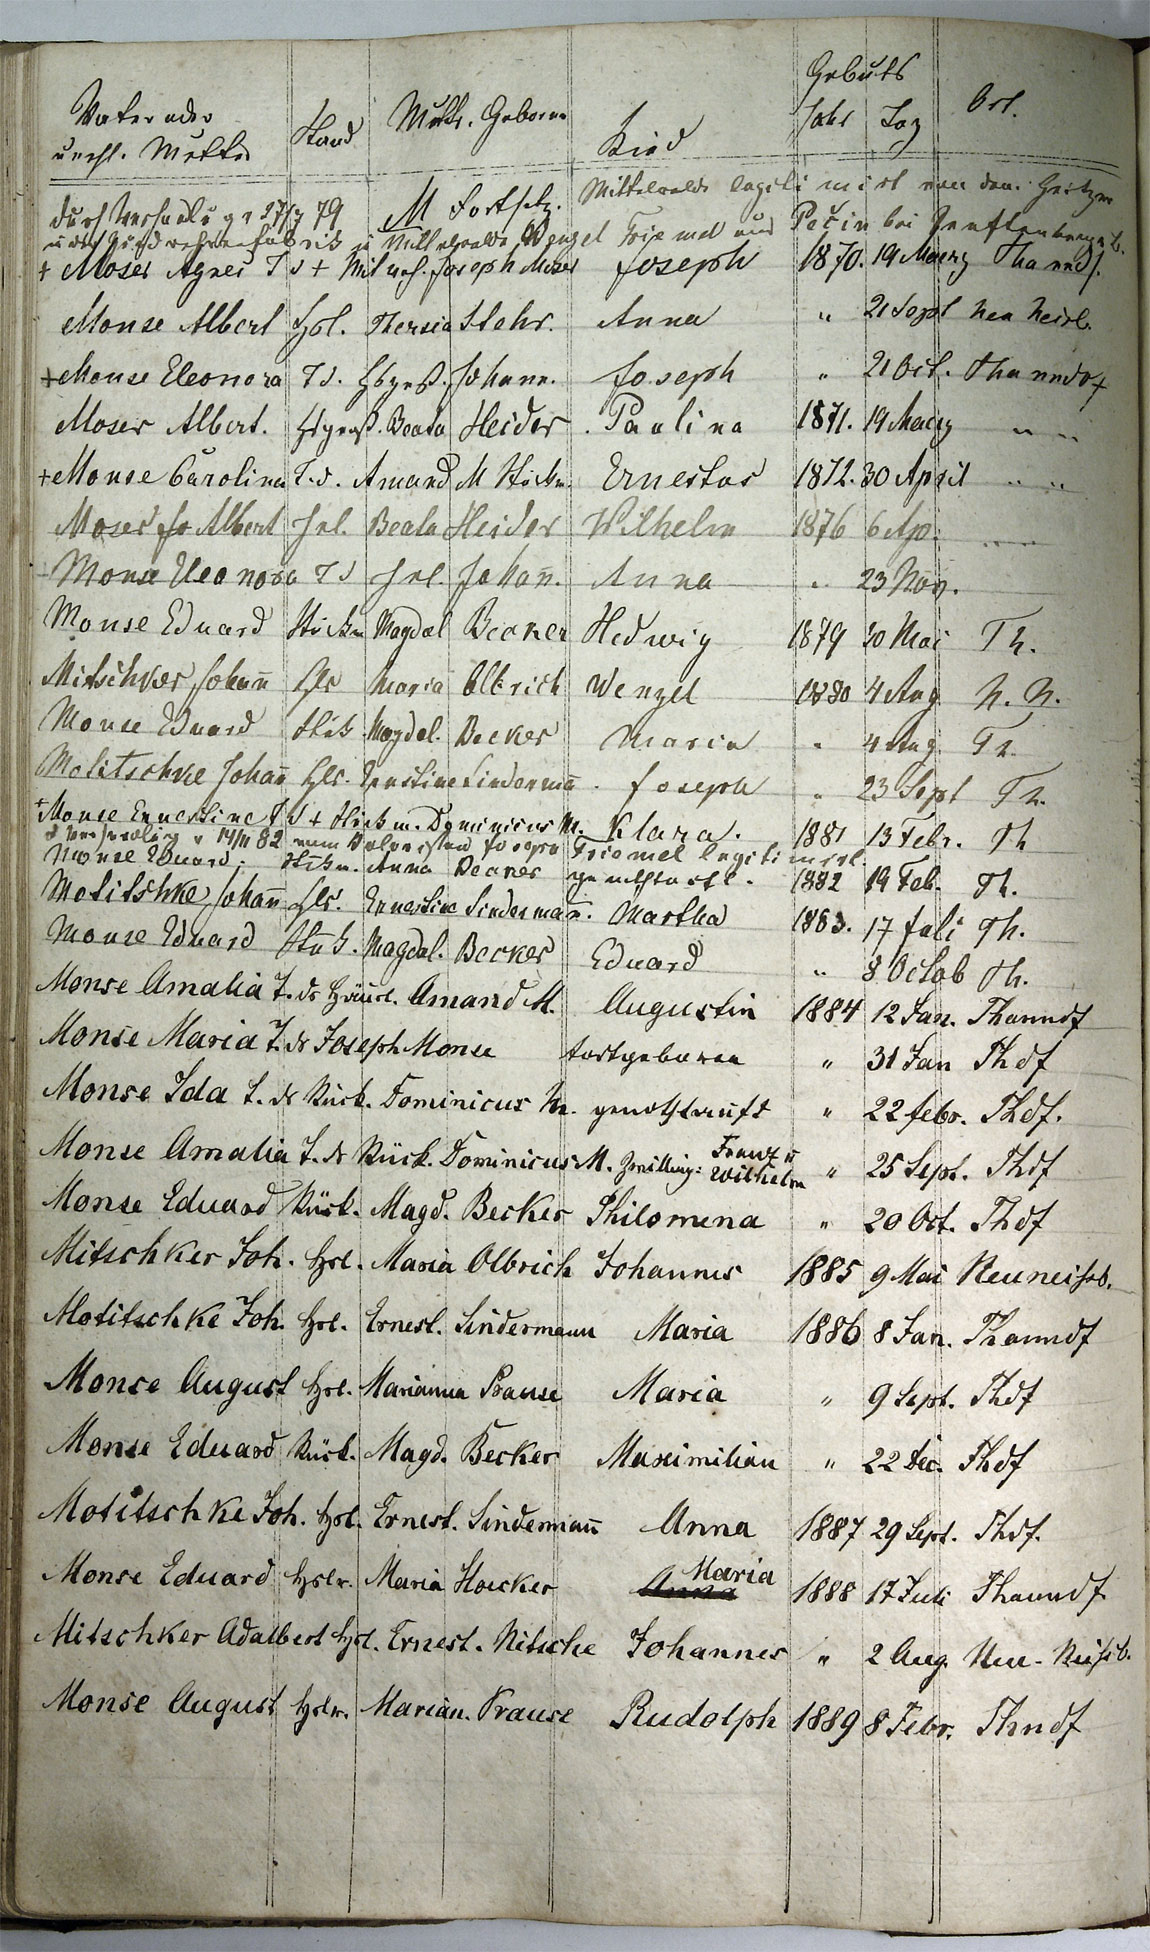 Taufregister 1770 - 1889 Seite 104